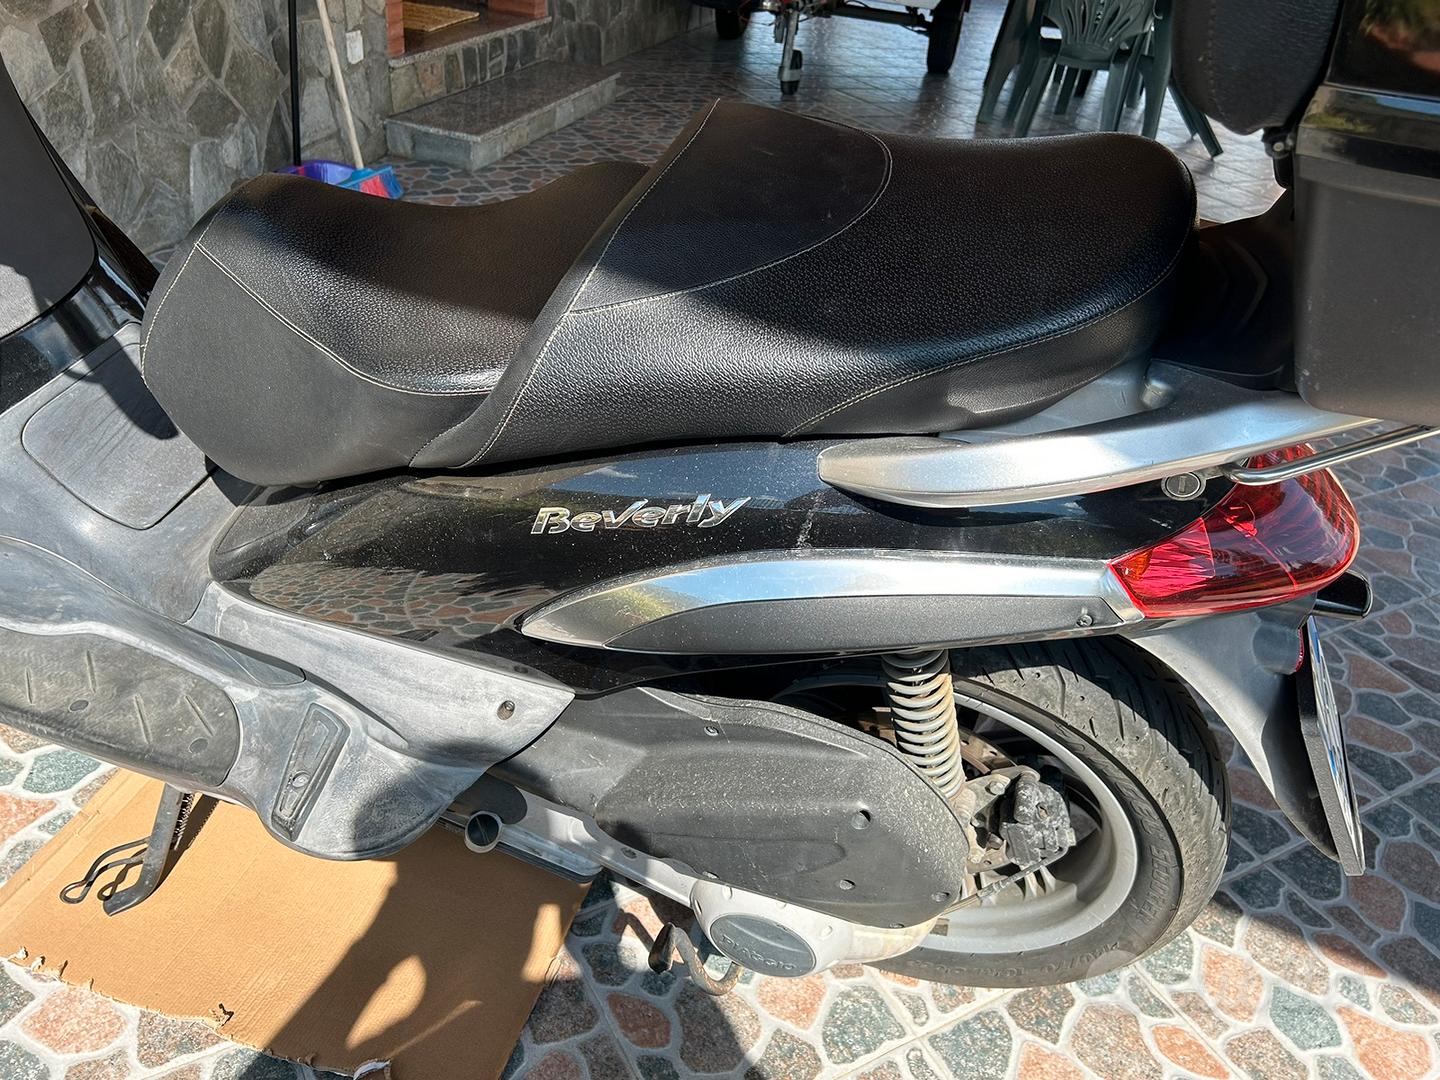 Piaggio Beverly 250 - Moto e Scooter In vendita a Salerno